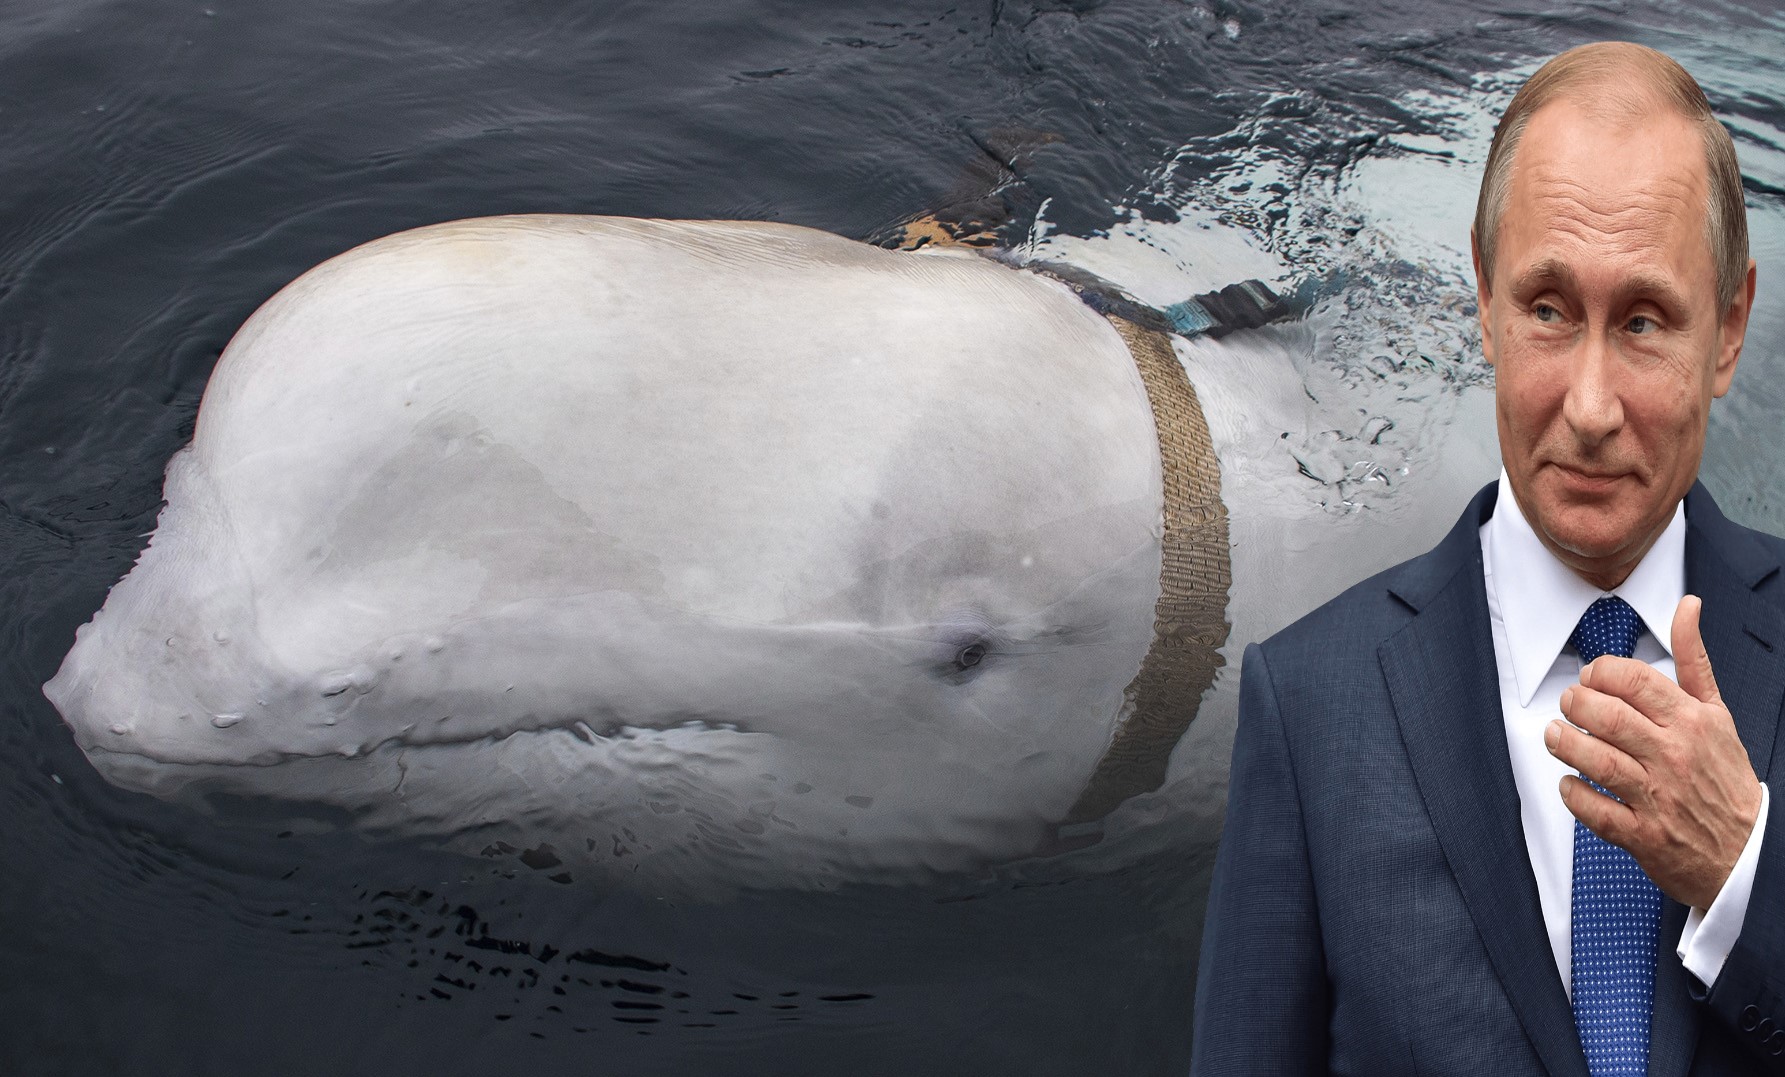 Encuentran una ballena con arnés que podría ser un arma rusa (Video)